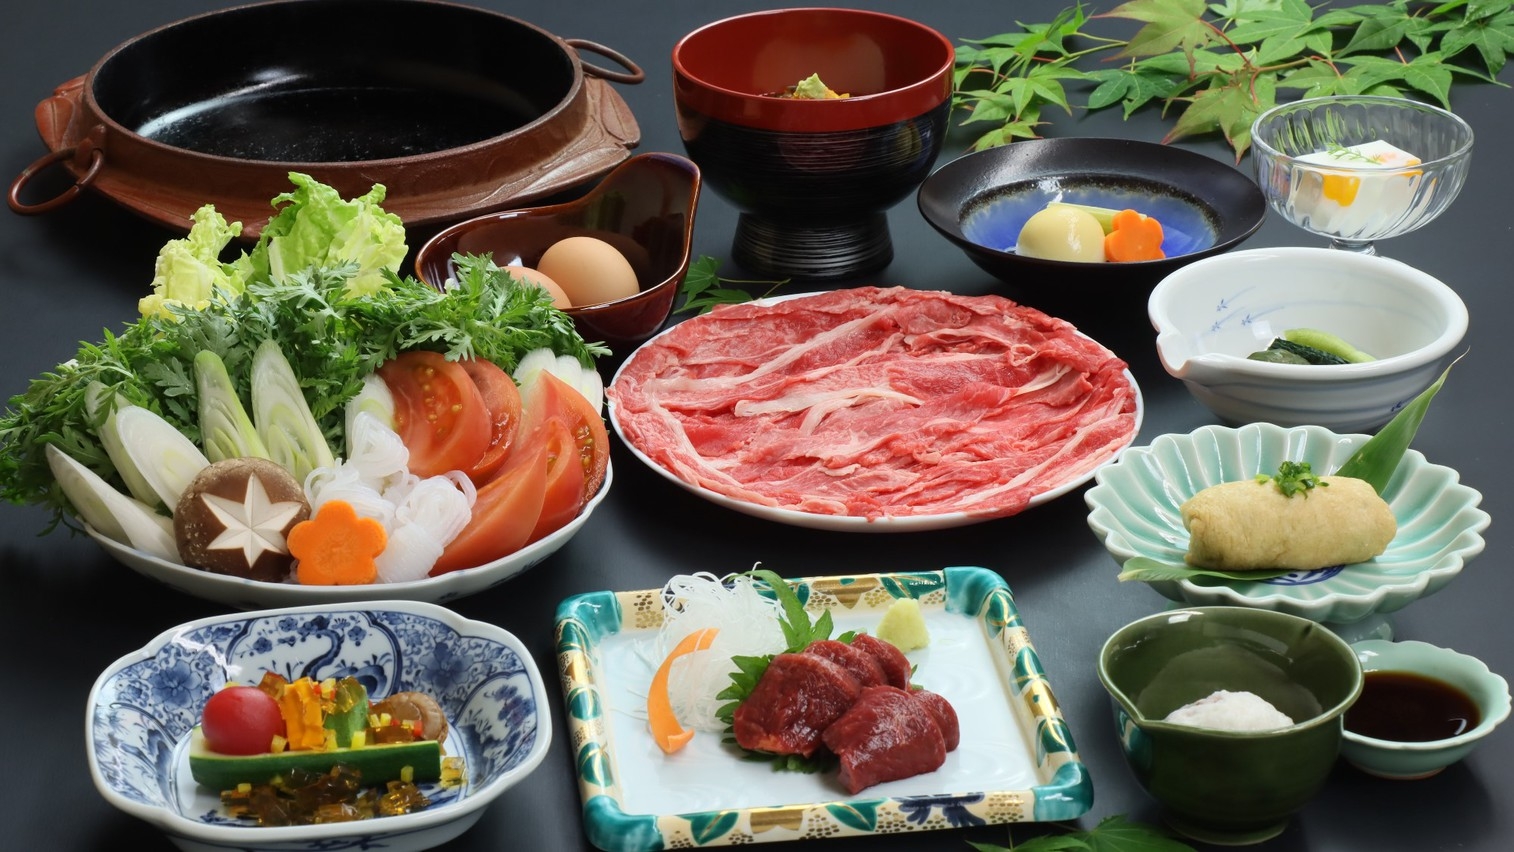 ■【桜鍋付き】創作懐石料理